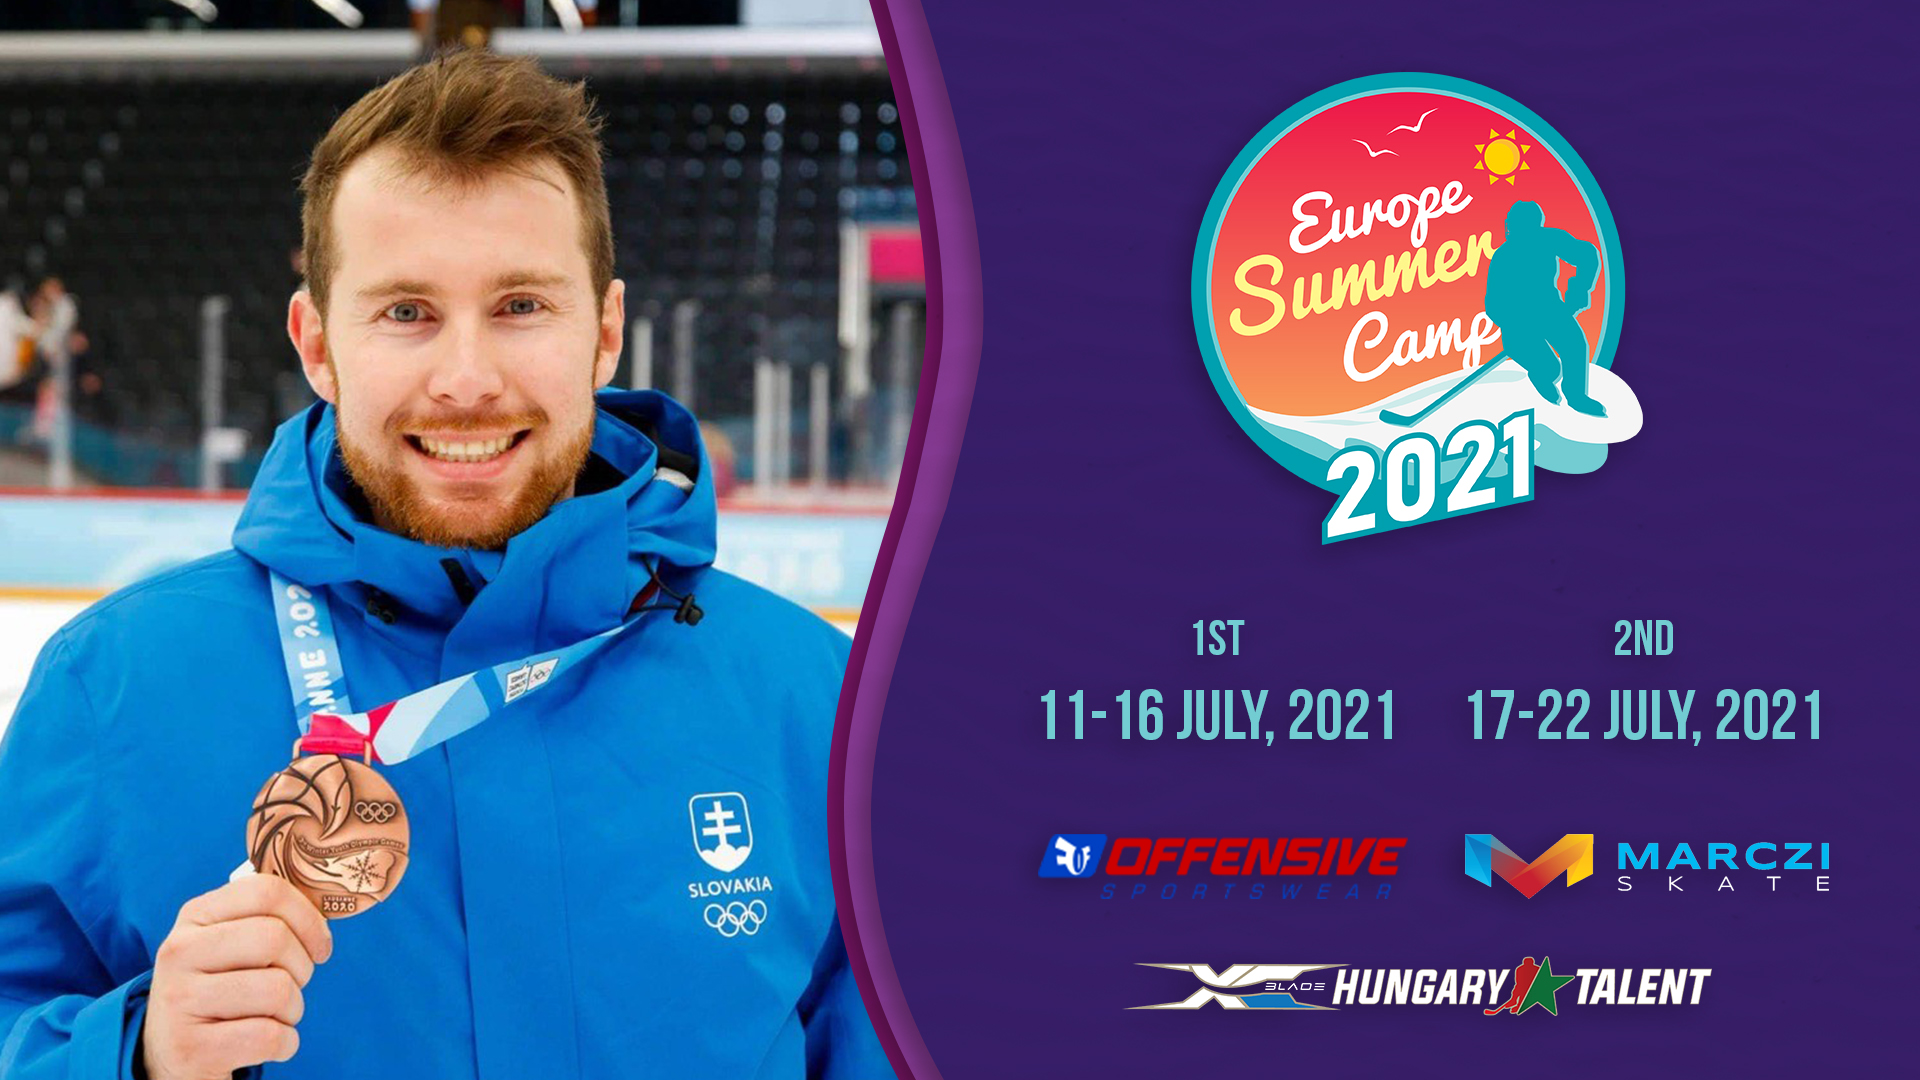 Rozhovor o Europe Summer Campe s trénerom Tomášom Seginom